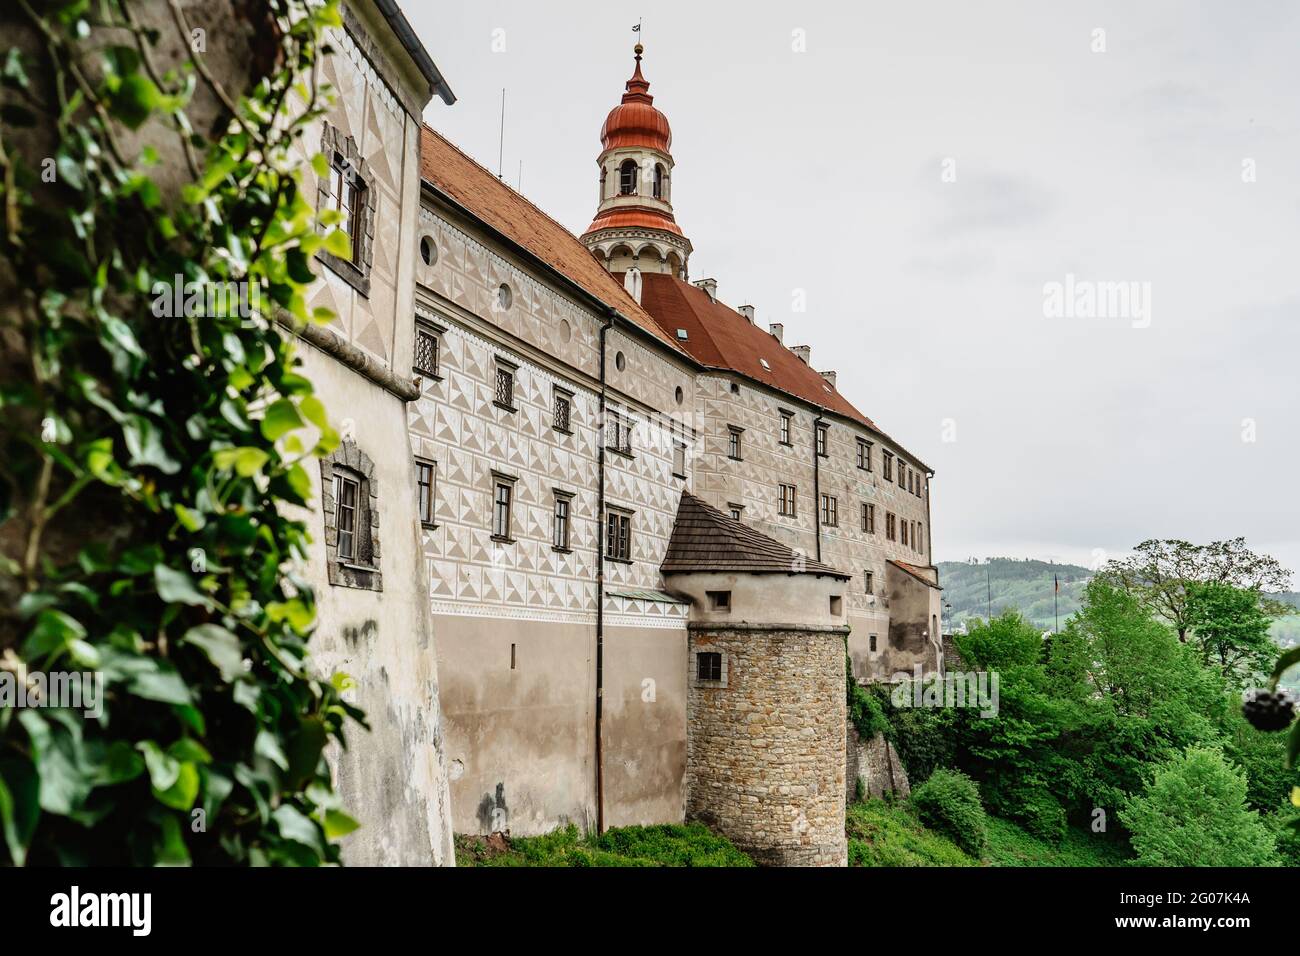 Nachod, Repubblica Ceca- Maggio 23,2021. Bellissimo castello con cinque cortili. Antico castello barocco e rinascimentale con torre di osservazione.Sgraffito Foto Stock